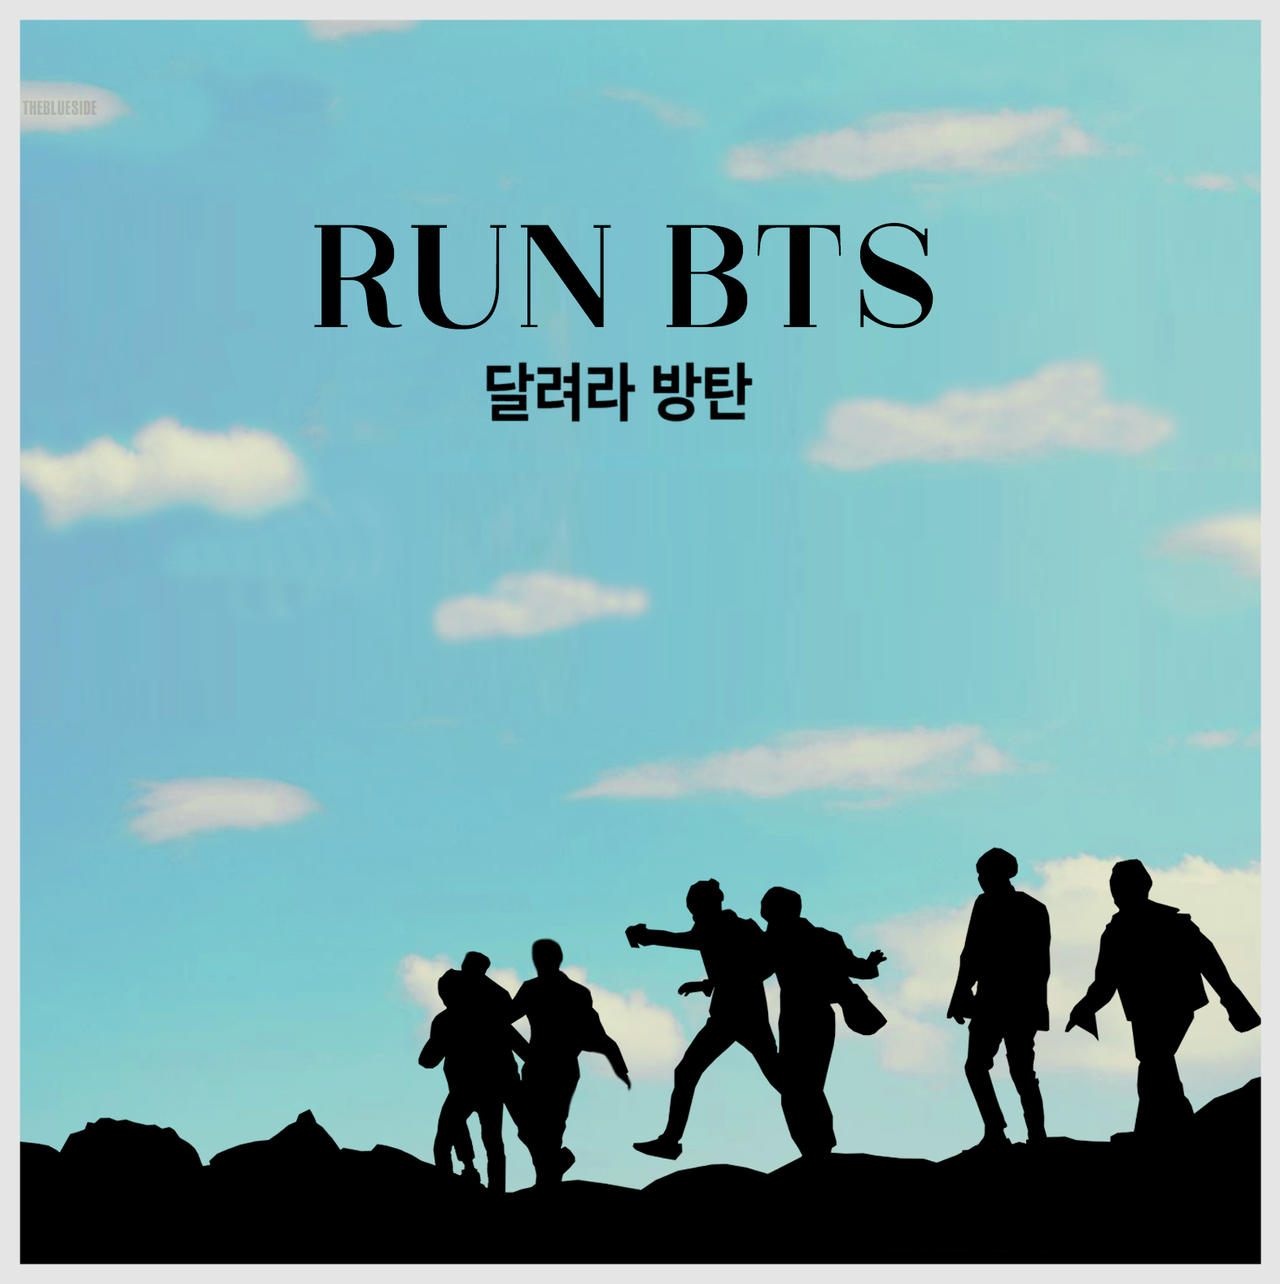 BTS showcases Run BTS on stage